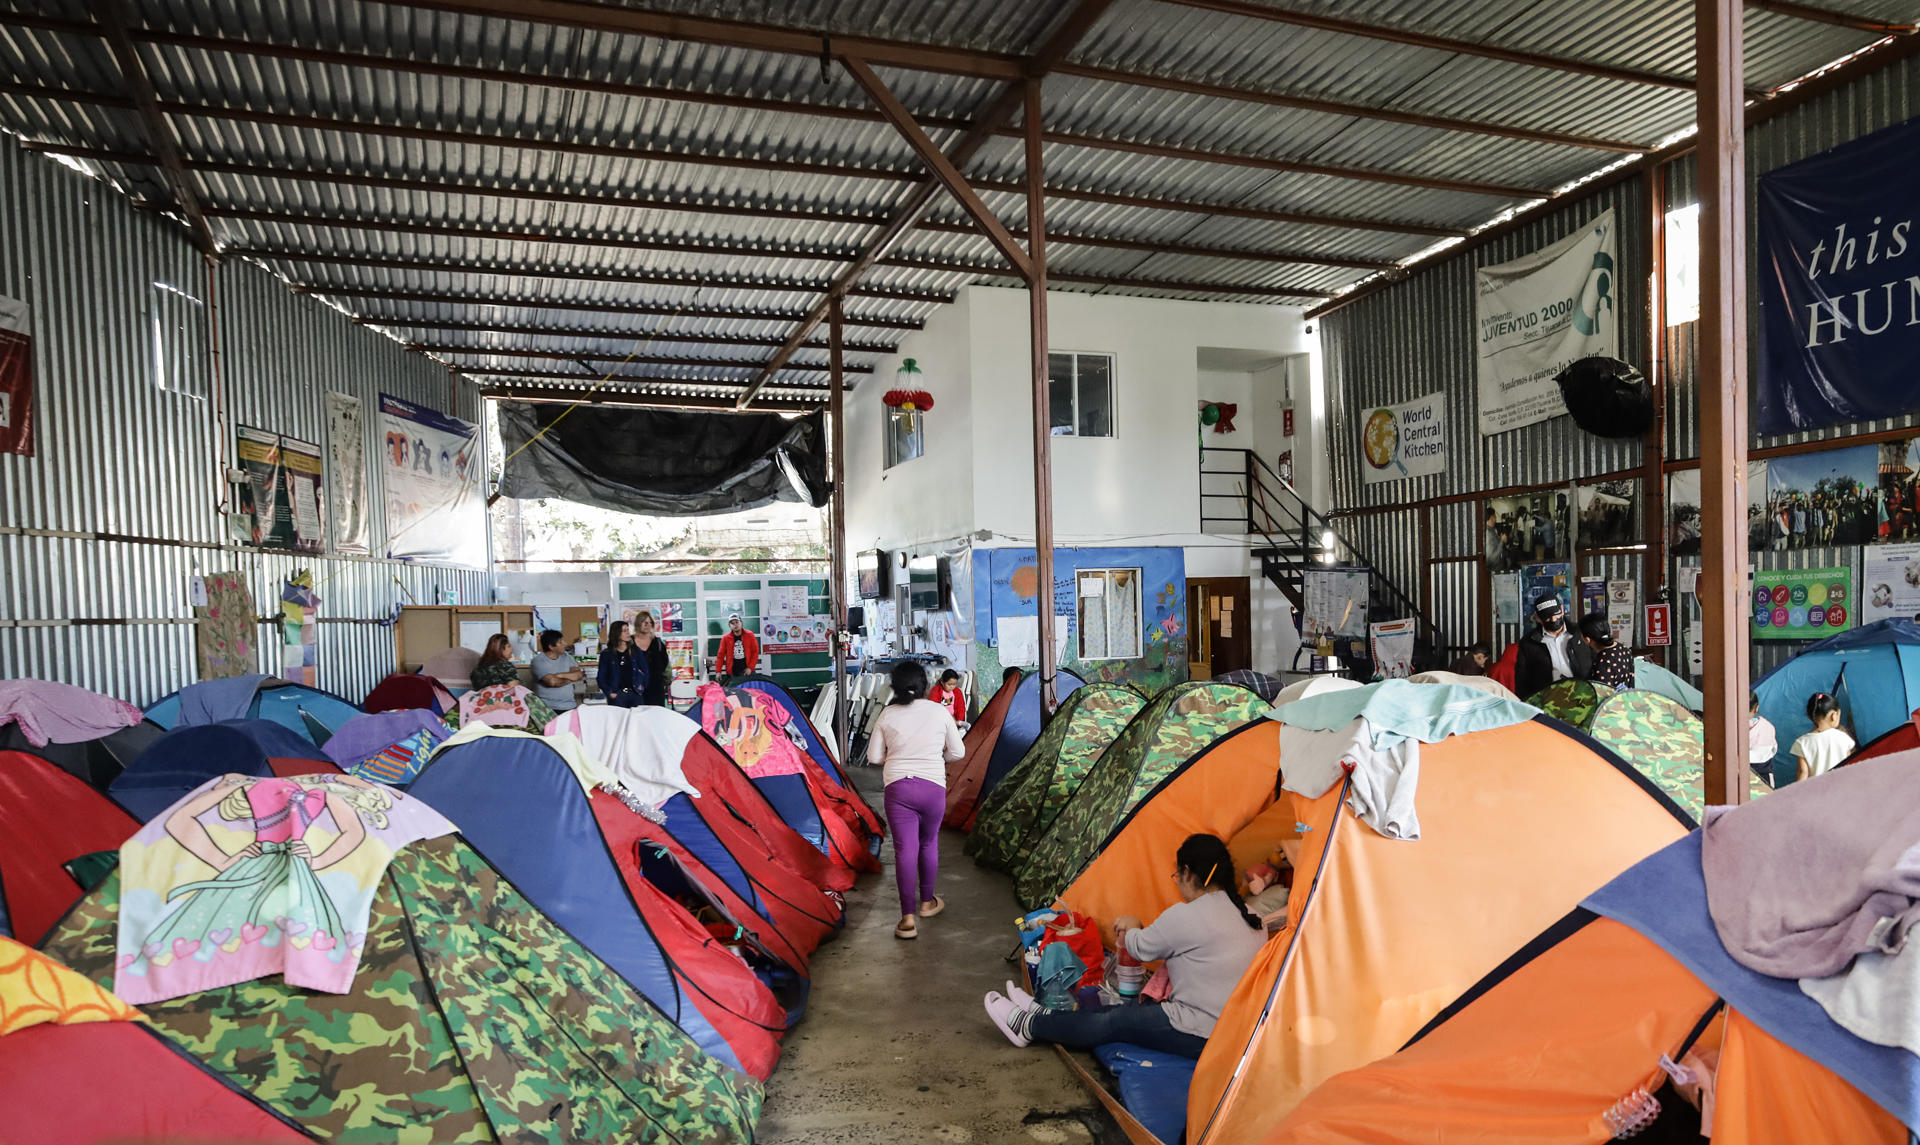 Albergues de migrantes en México comienzan el año con un “respiro” temporal